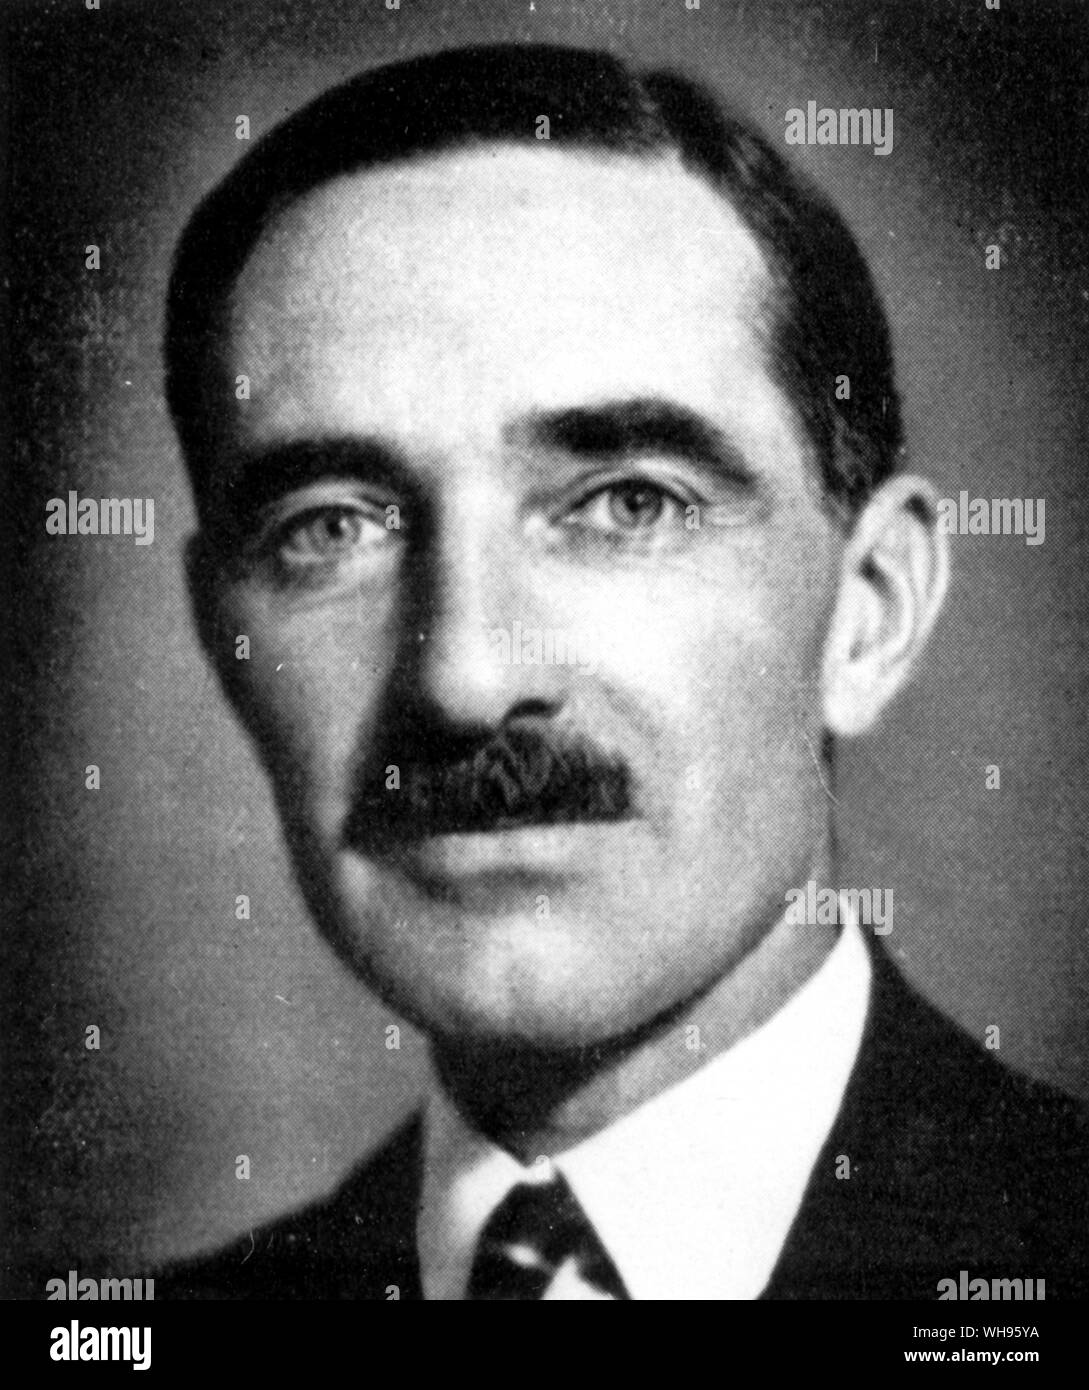 Lord Aberdare (Grande-Bretagne) membre du Comité exécutif des Jeux Olympiques 1936 Banque D'Images